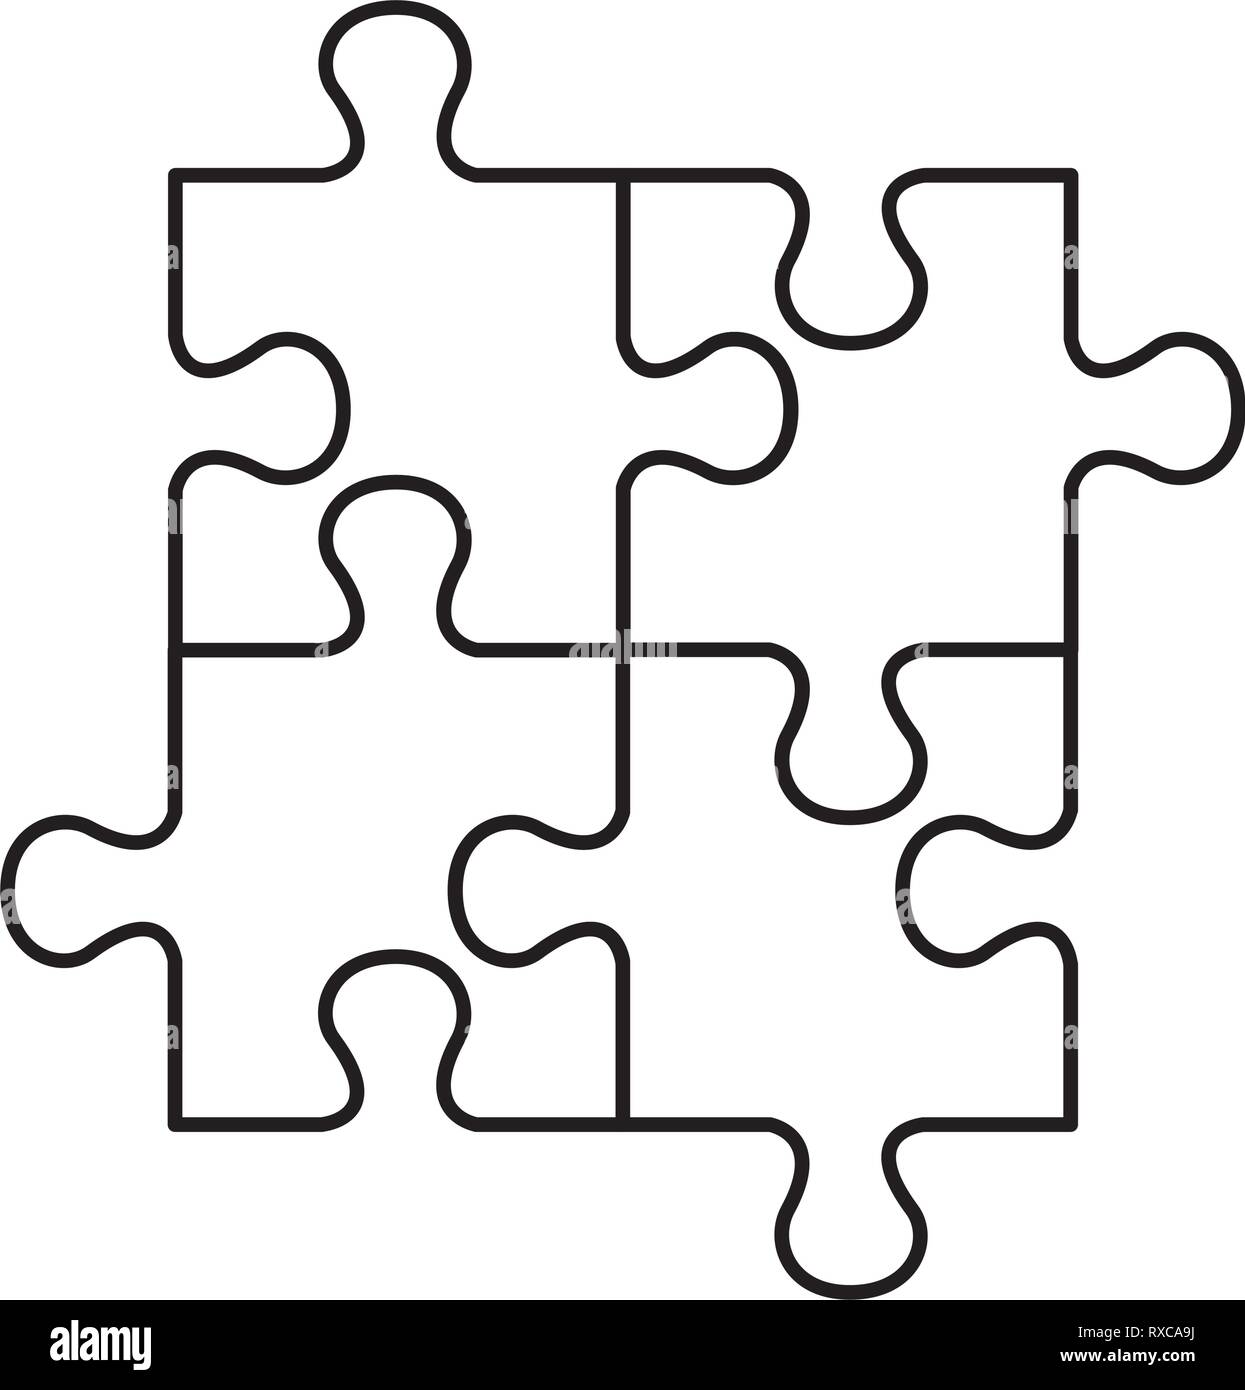 Puzzle verbundene Lösung Symbol Stock-Vektorgrafik - Alamy